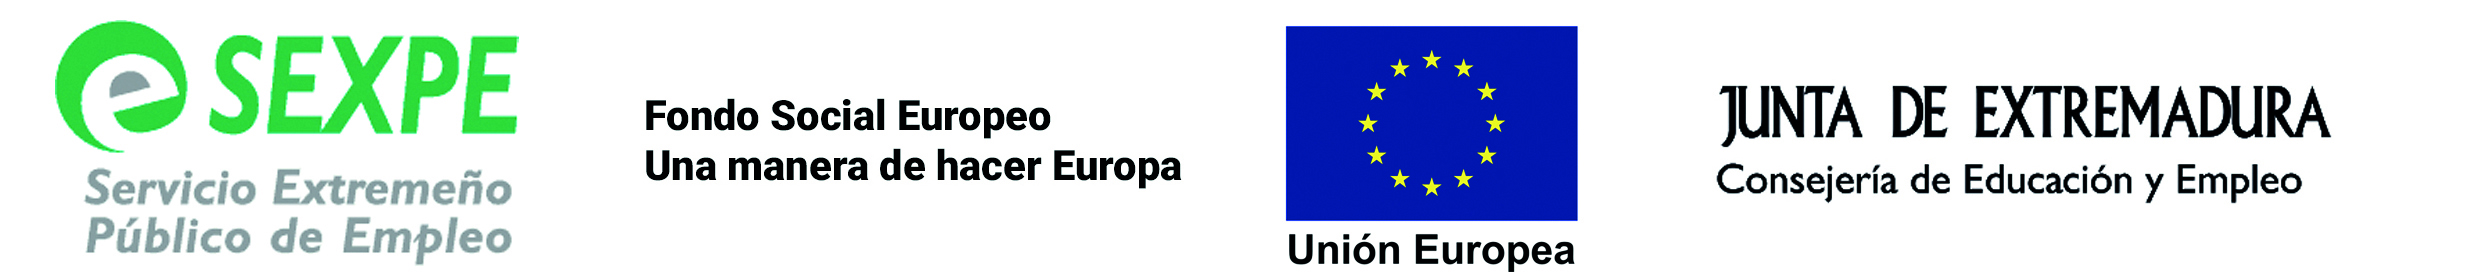 LOGO SEXPE, UNION EUROPEA Y JUNTA DE EXTREMADURA